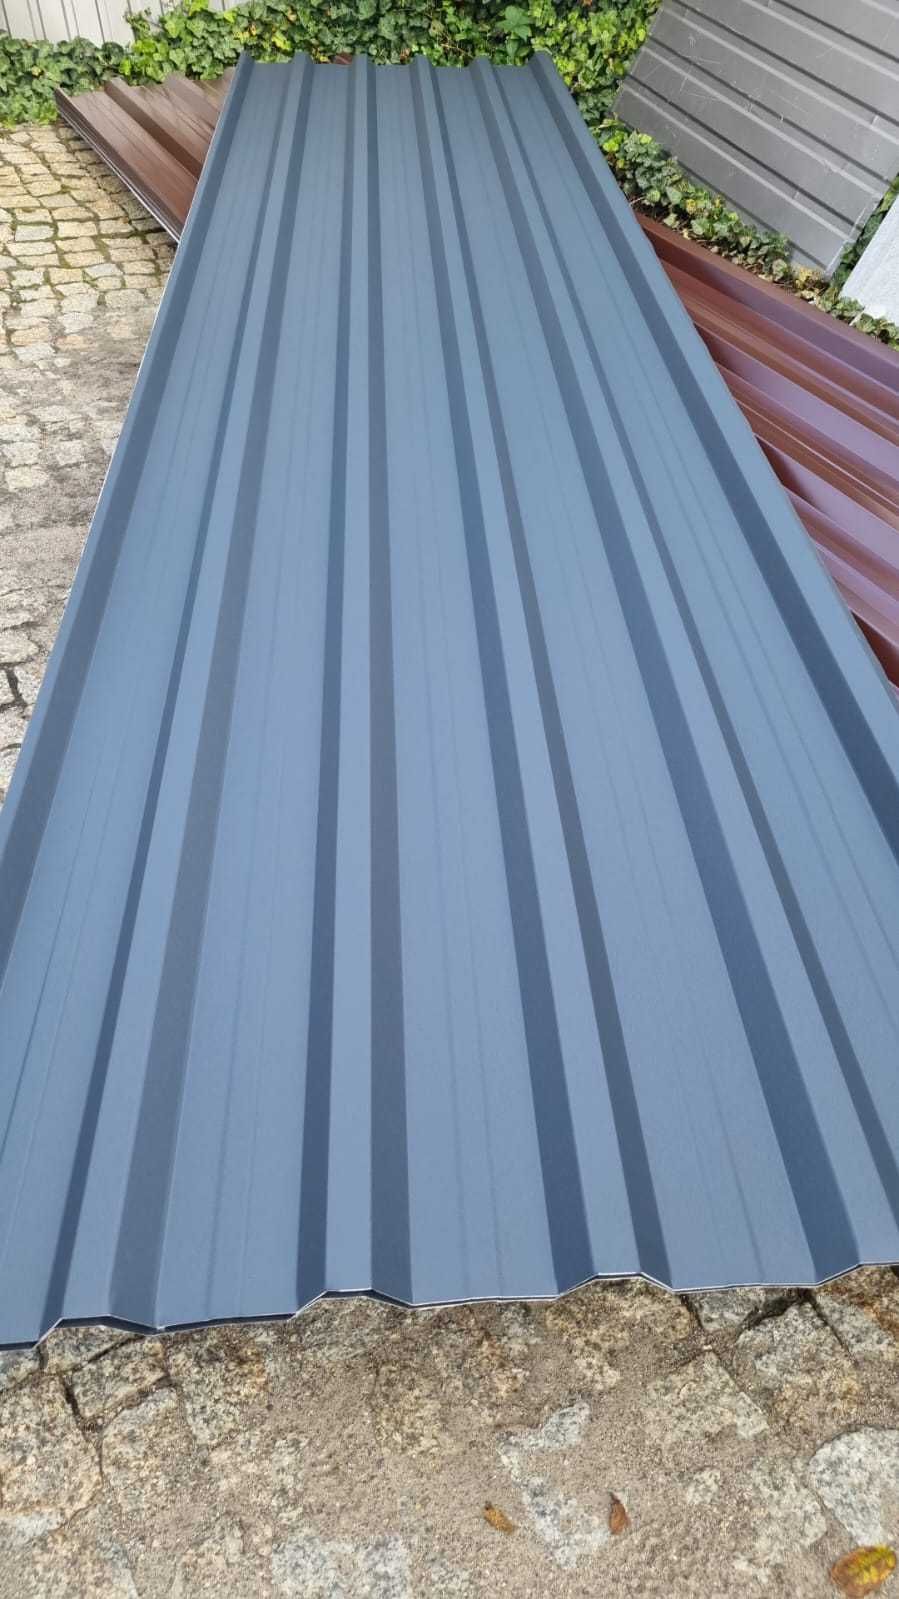 BLACHA trapezowa T18 9005 z obróbkami na dach 7016 od producenta